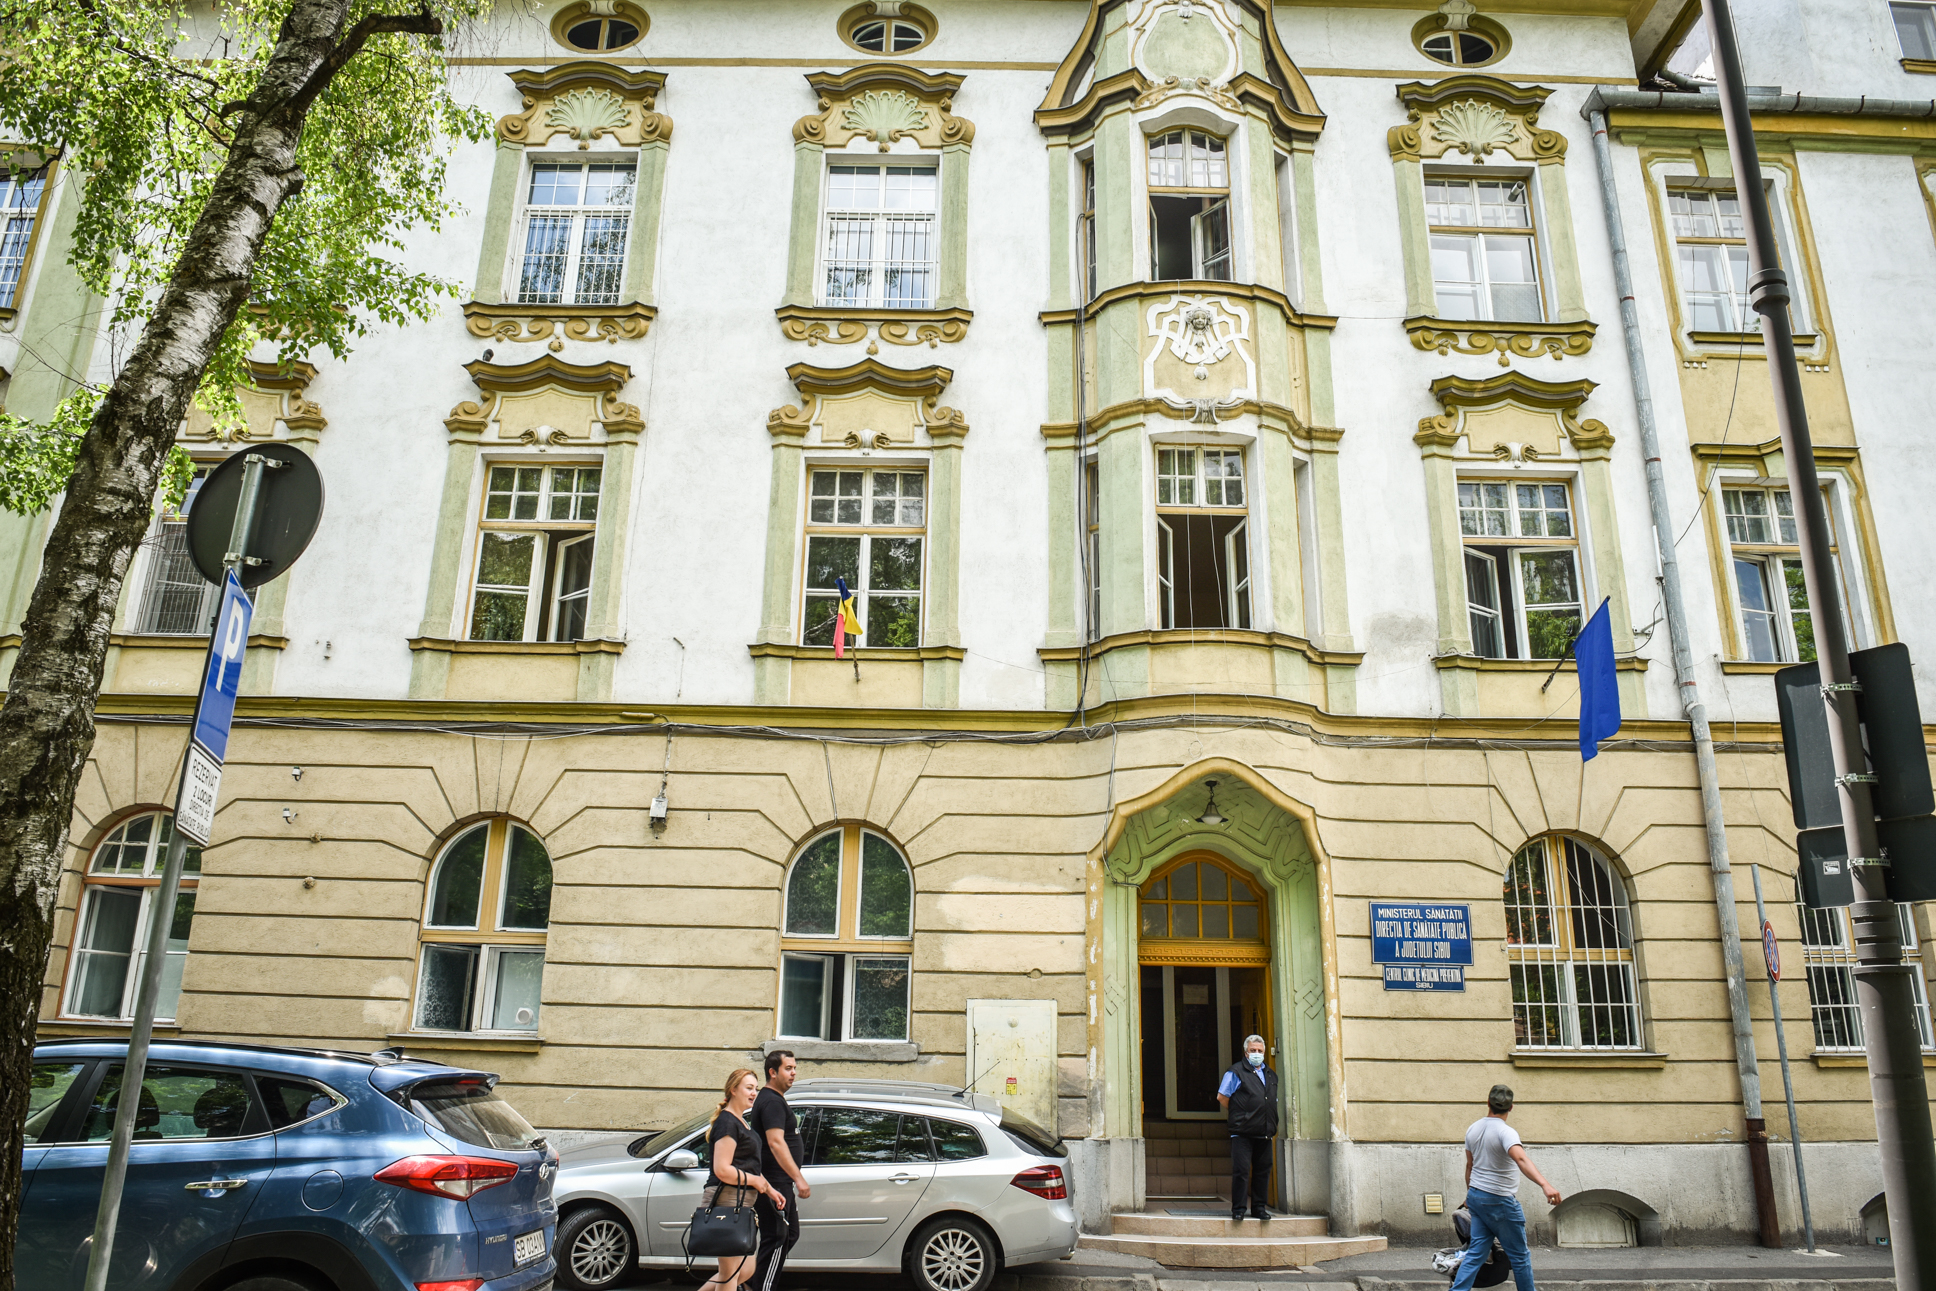 Concluziile DSP Sibiu în urma anchetei copiilor bolnavi din Avrig: ”O intoxicație alimentară de natură bacteriană”